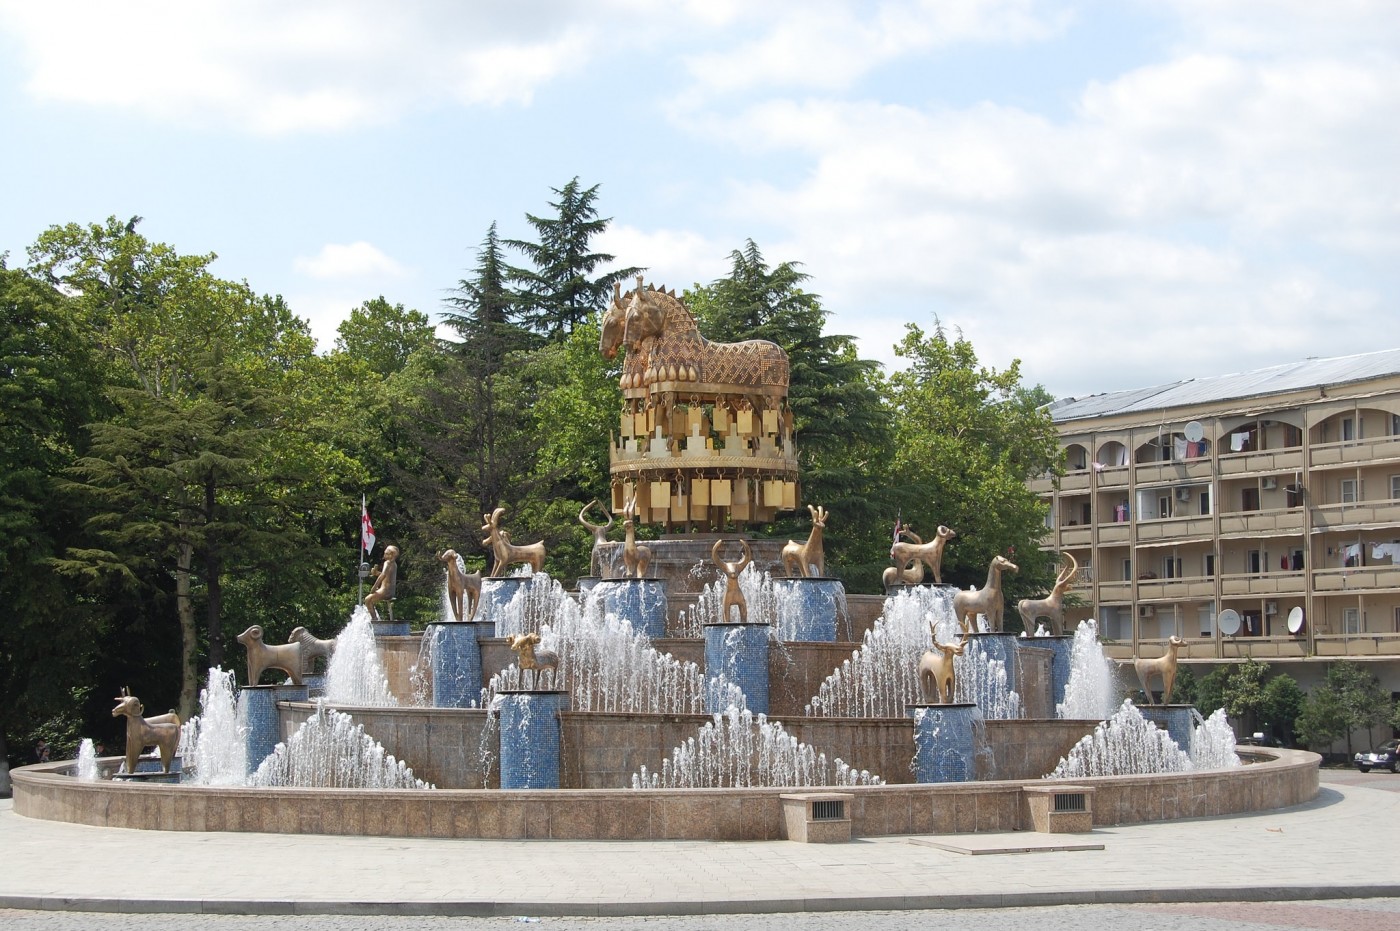 Đài phun nước ở Kutaisi dành riêng cho huyền thoại về Argonauts và Golden Fleece